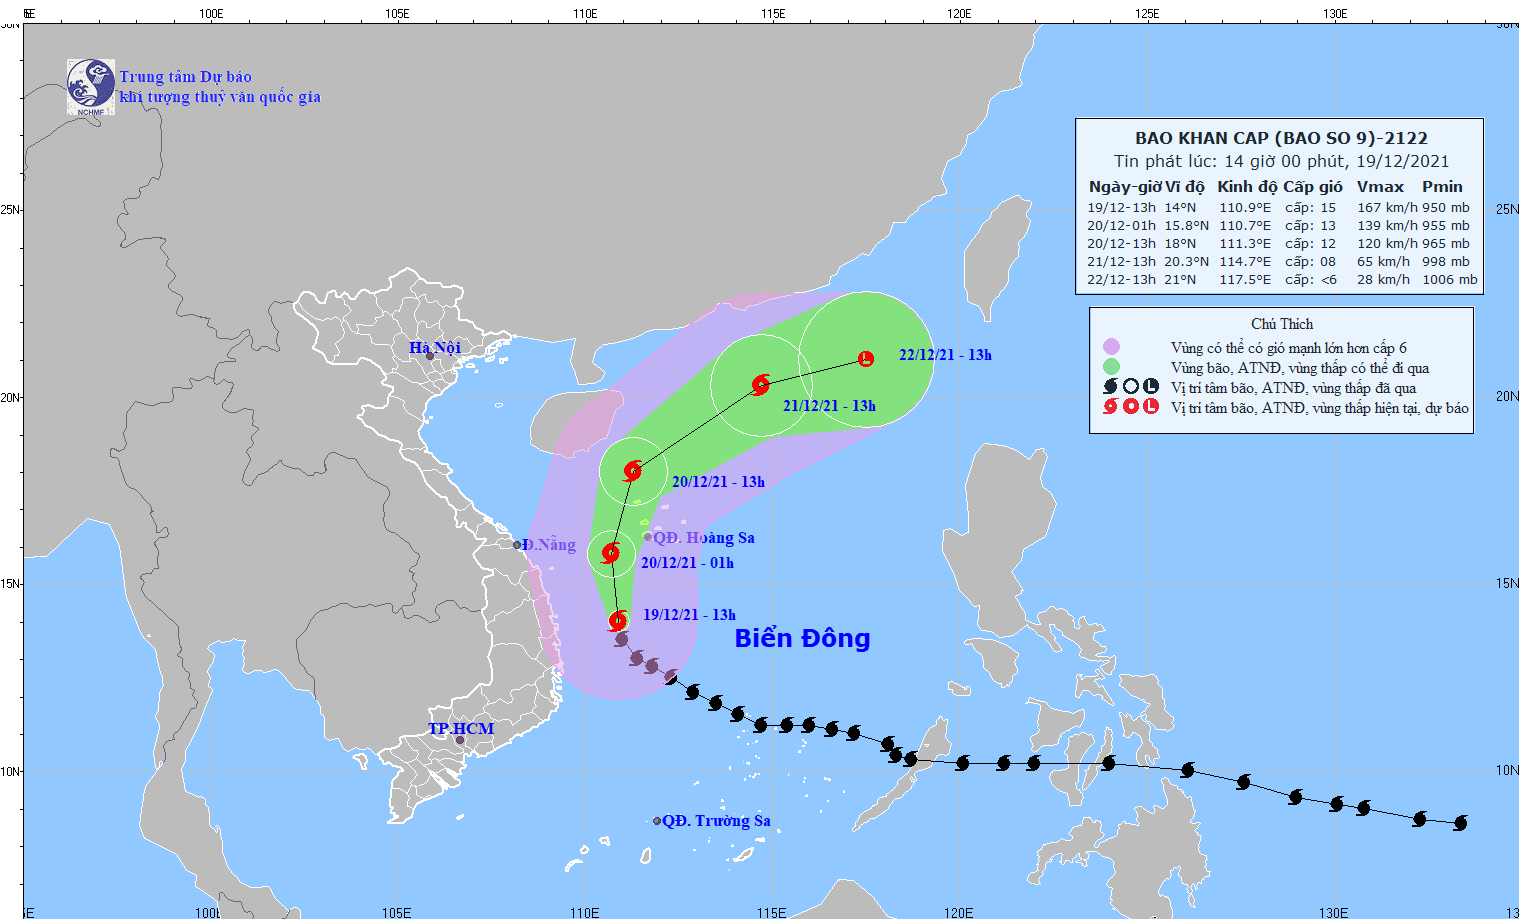 Đường đi của bão số 9 (bãi RAI) tính đến 14 giờ ngày 19/12/2021. Ảnh: nchmf.gov.vn